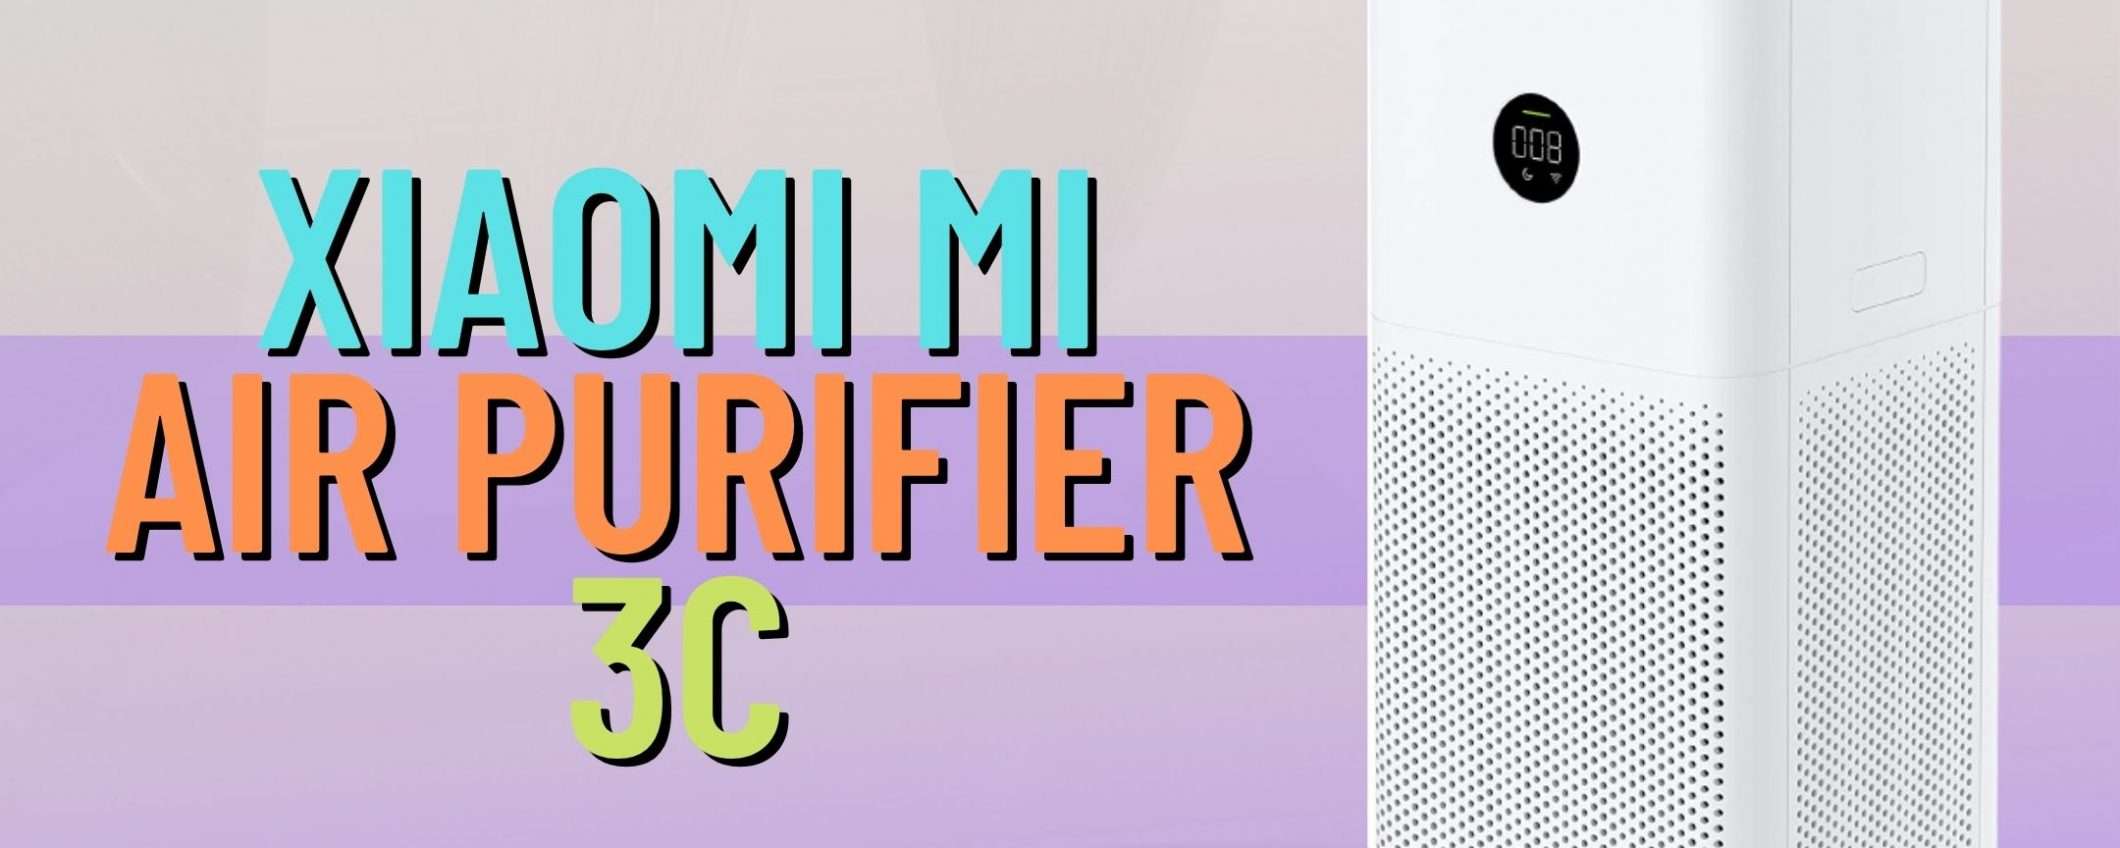 Xiaomi Mi Air Purifier 3C: un purificatore d'aria eccezionale